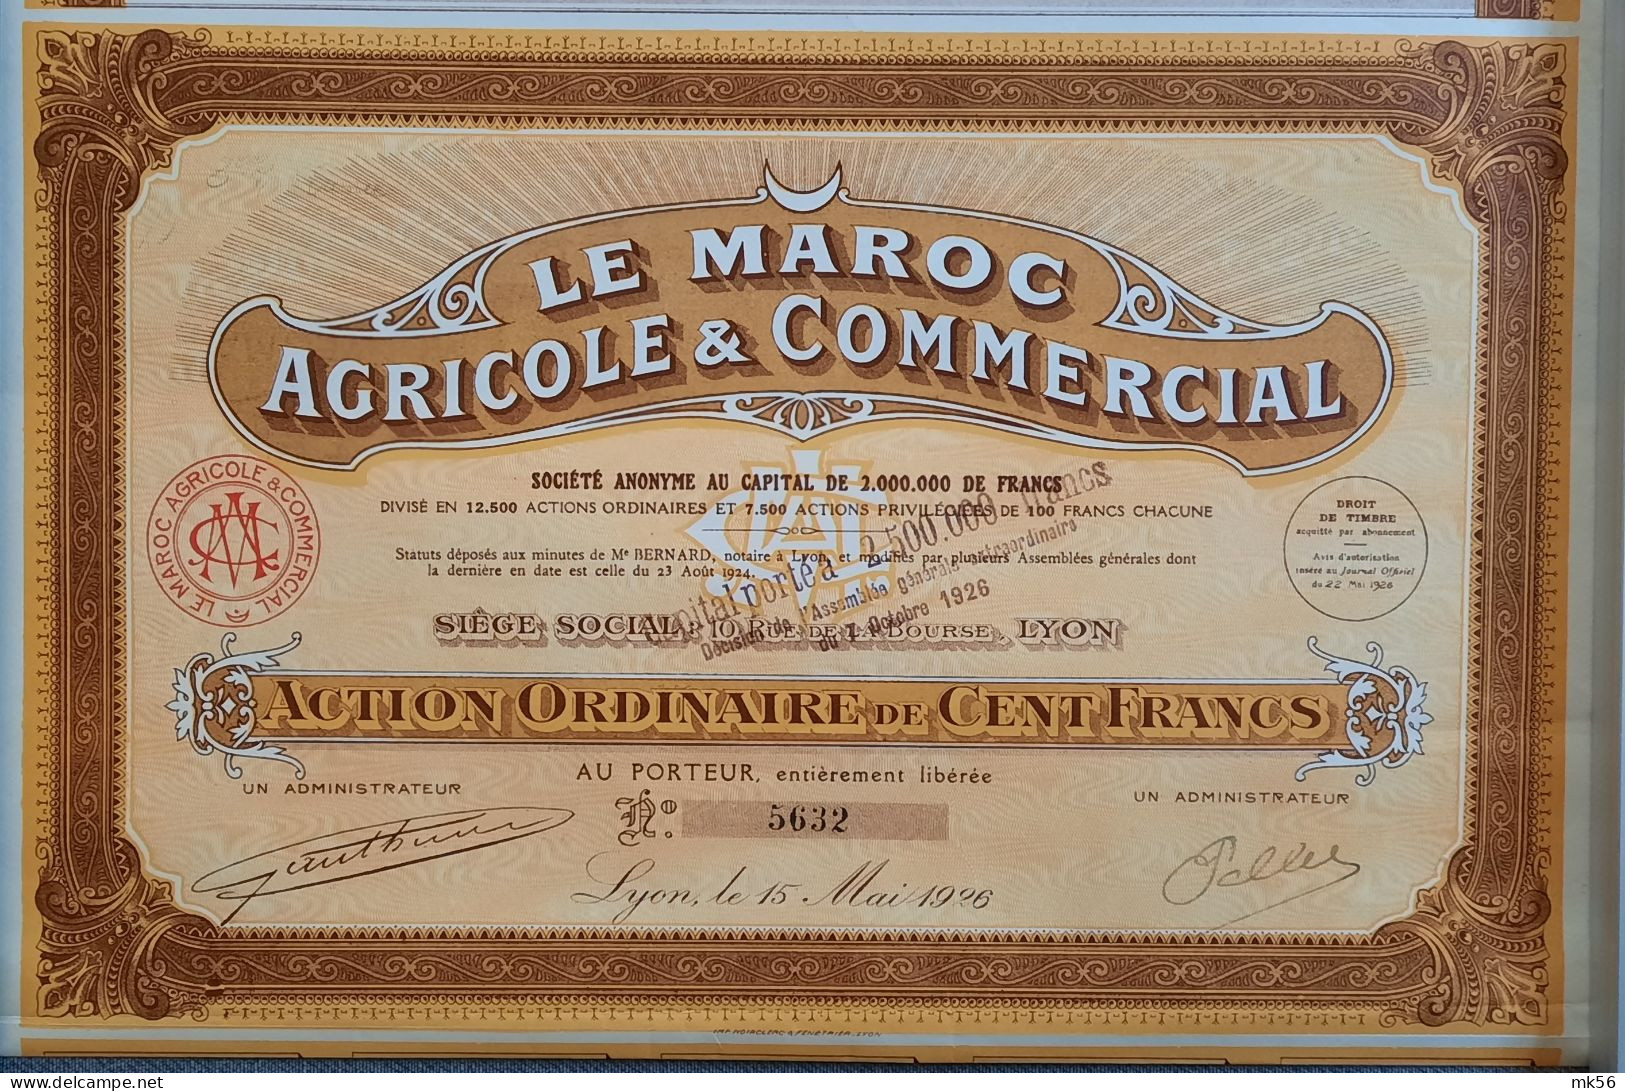 Le Maroc Agricole & Commerciale - Lyon - 1926 - Landbouw